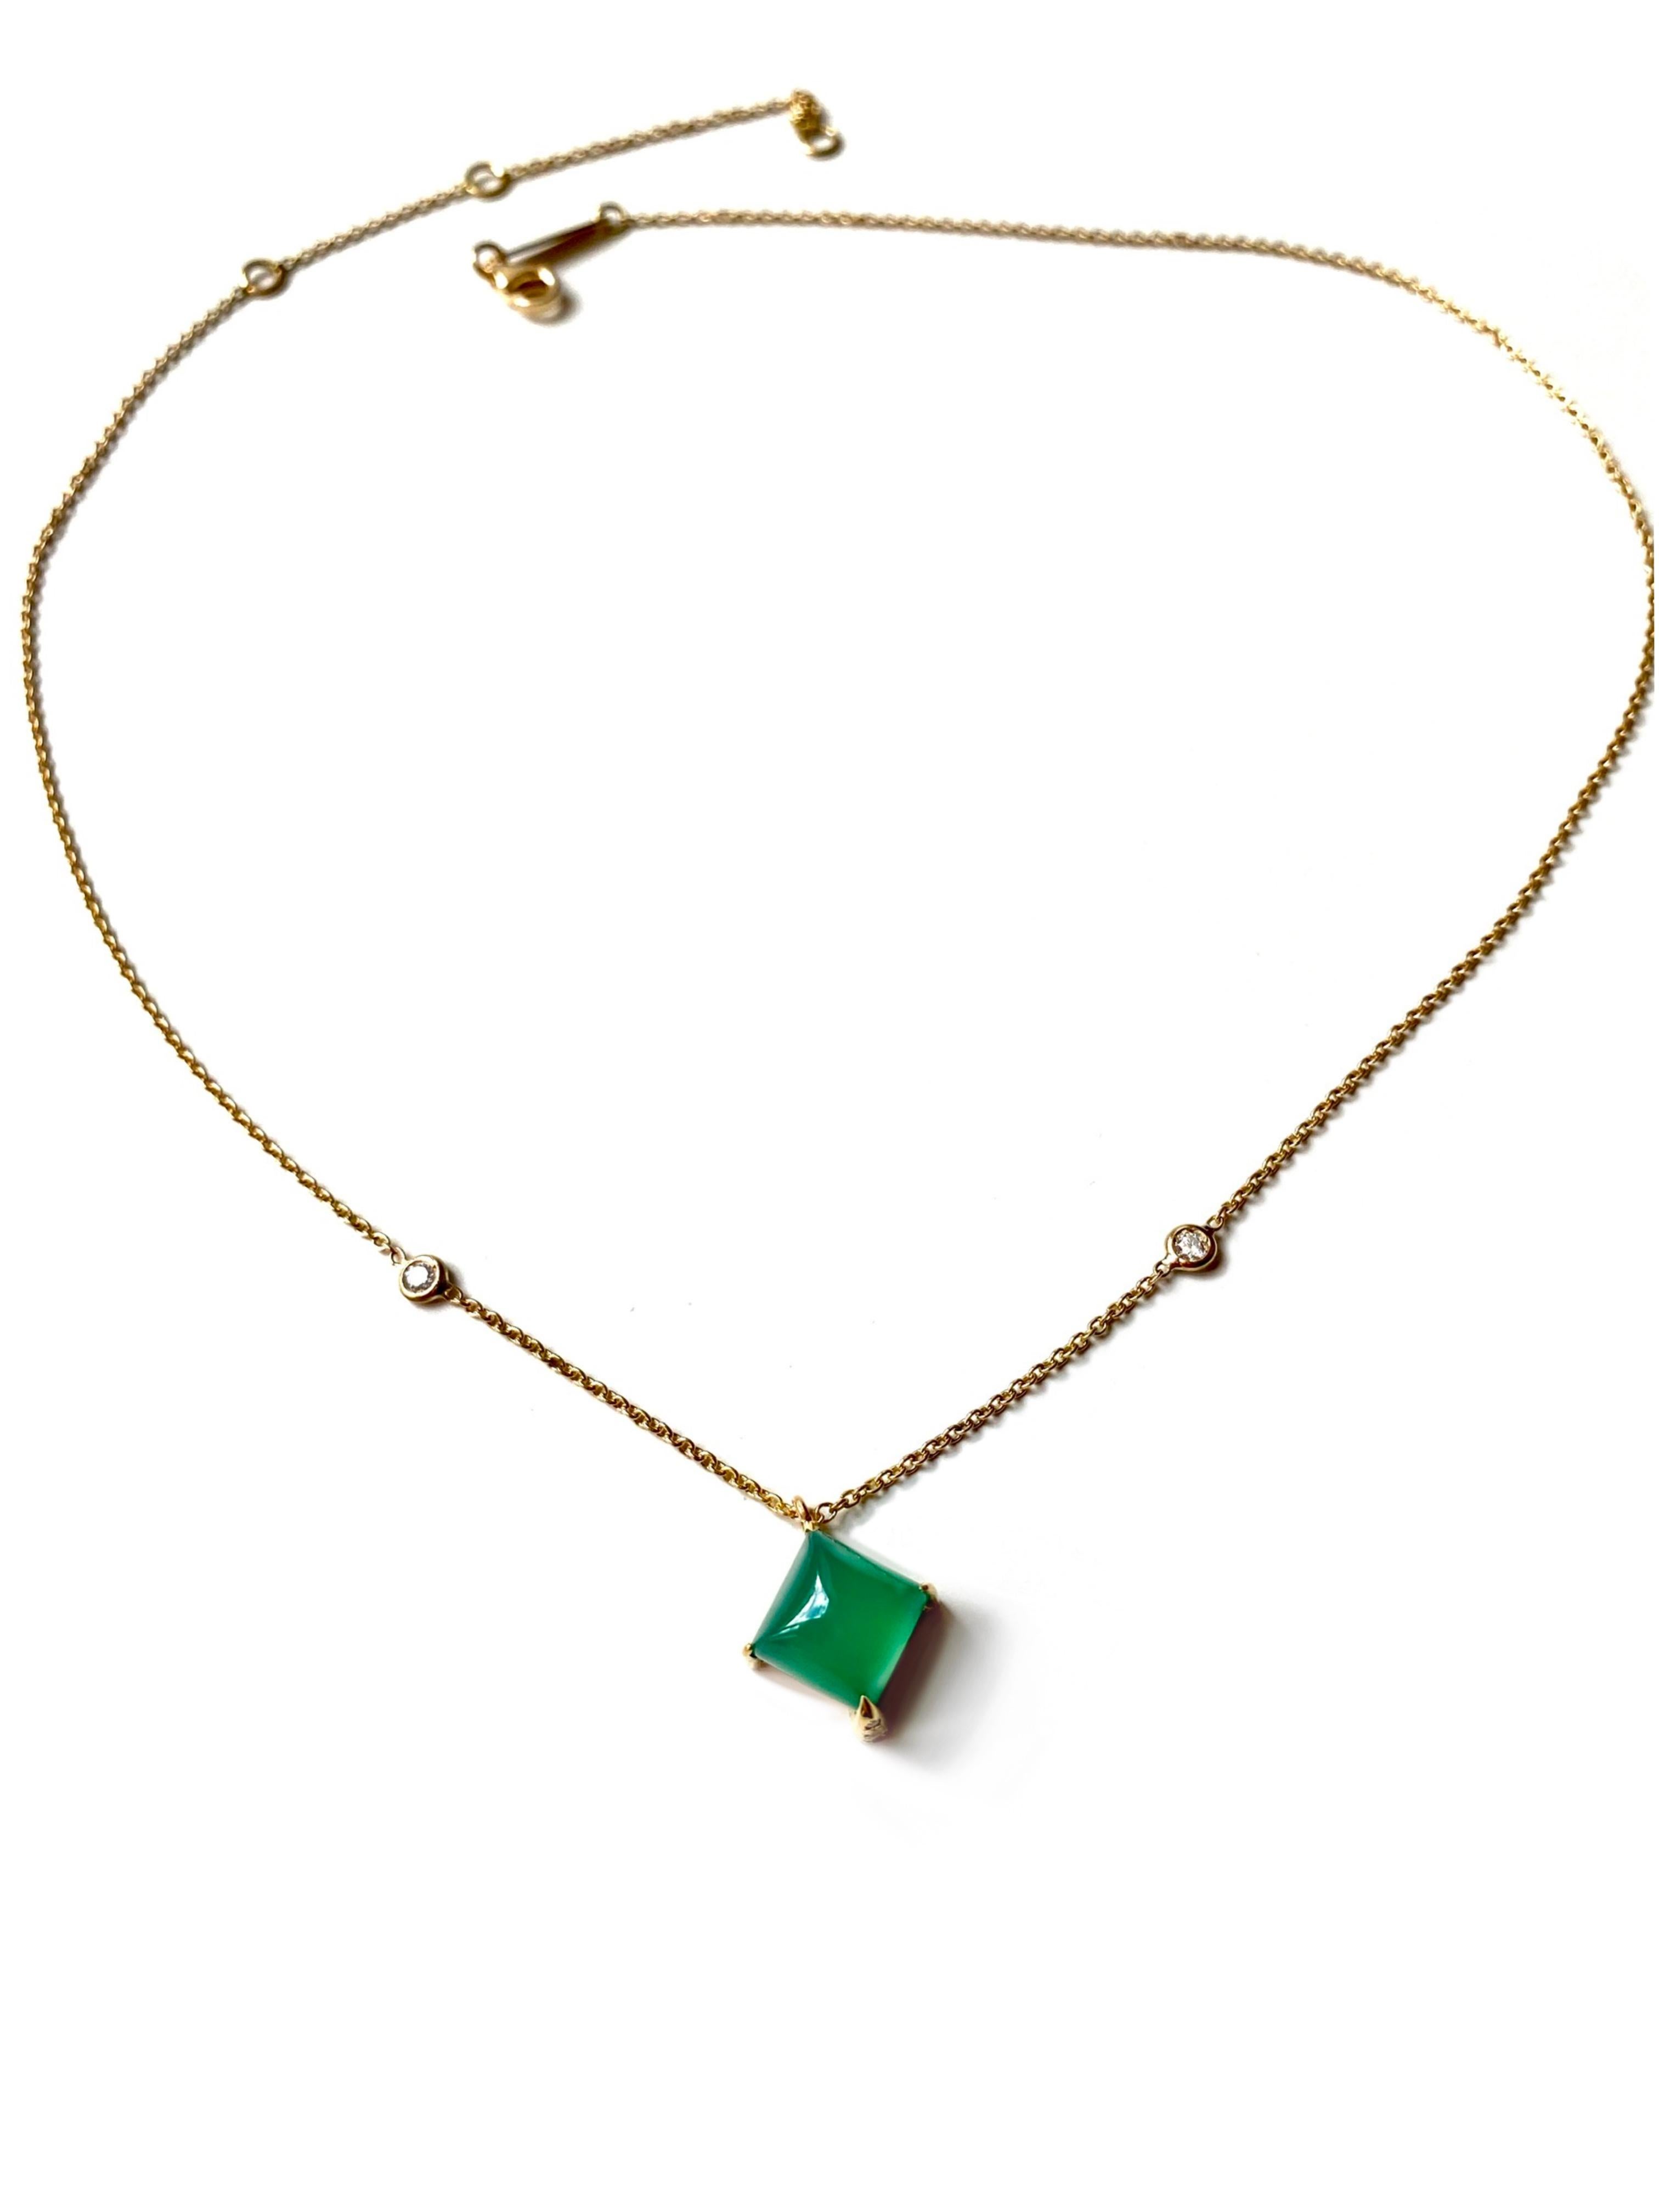 Rossella Ugolini Design Collection Art Deco Style 18 Karat Yellow Gold 0.045 white Diamonds Green Agate Design Chain Necklace Pendant.
Deux lunette en diamants blancs sont situées sur la chaîne. Au centre, une pyramide en pain de sucre en agate